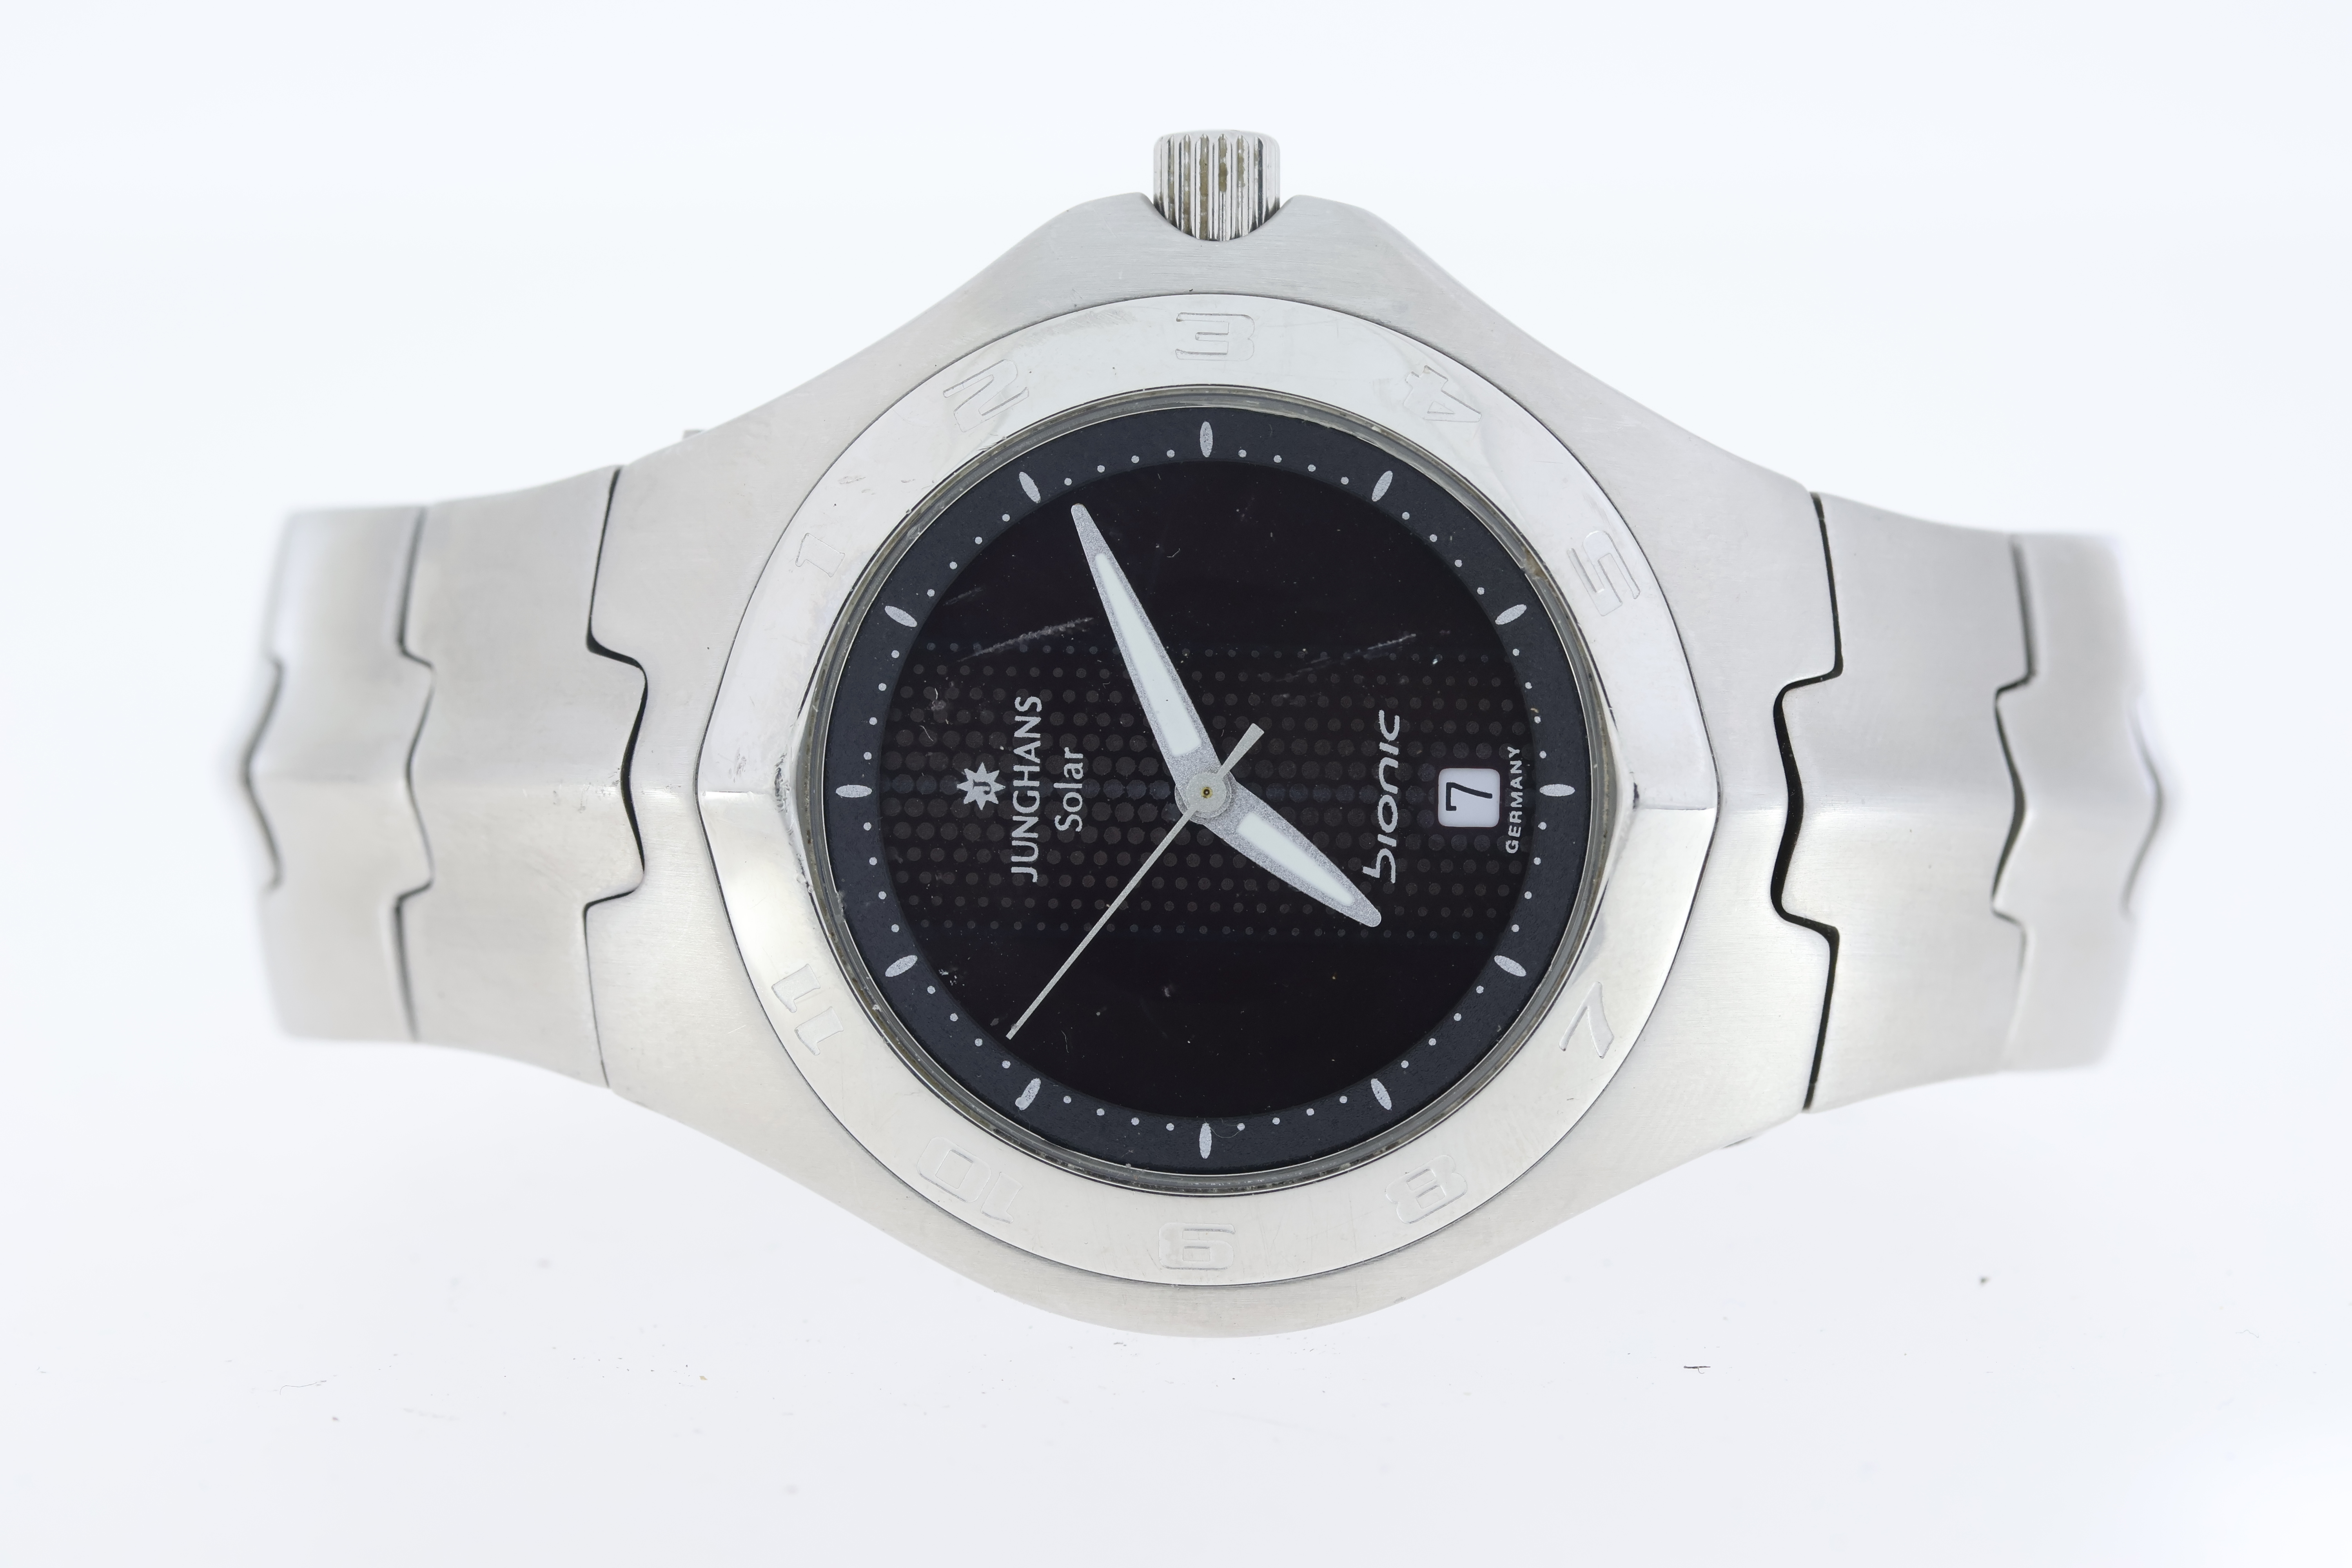 Job lot of 5 wristwatches. Including a Seiko sportmatic automatic, Seiko quartz chronograph, - Image 2 of 6